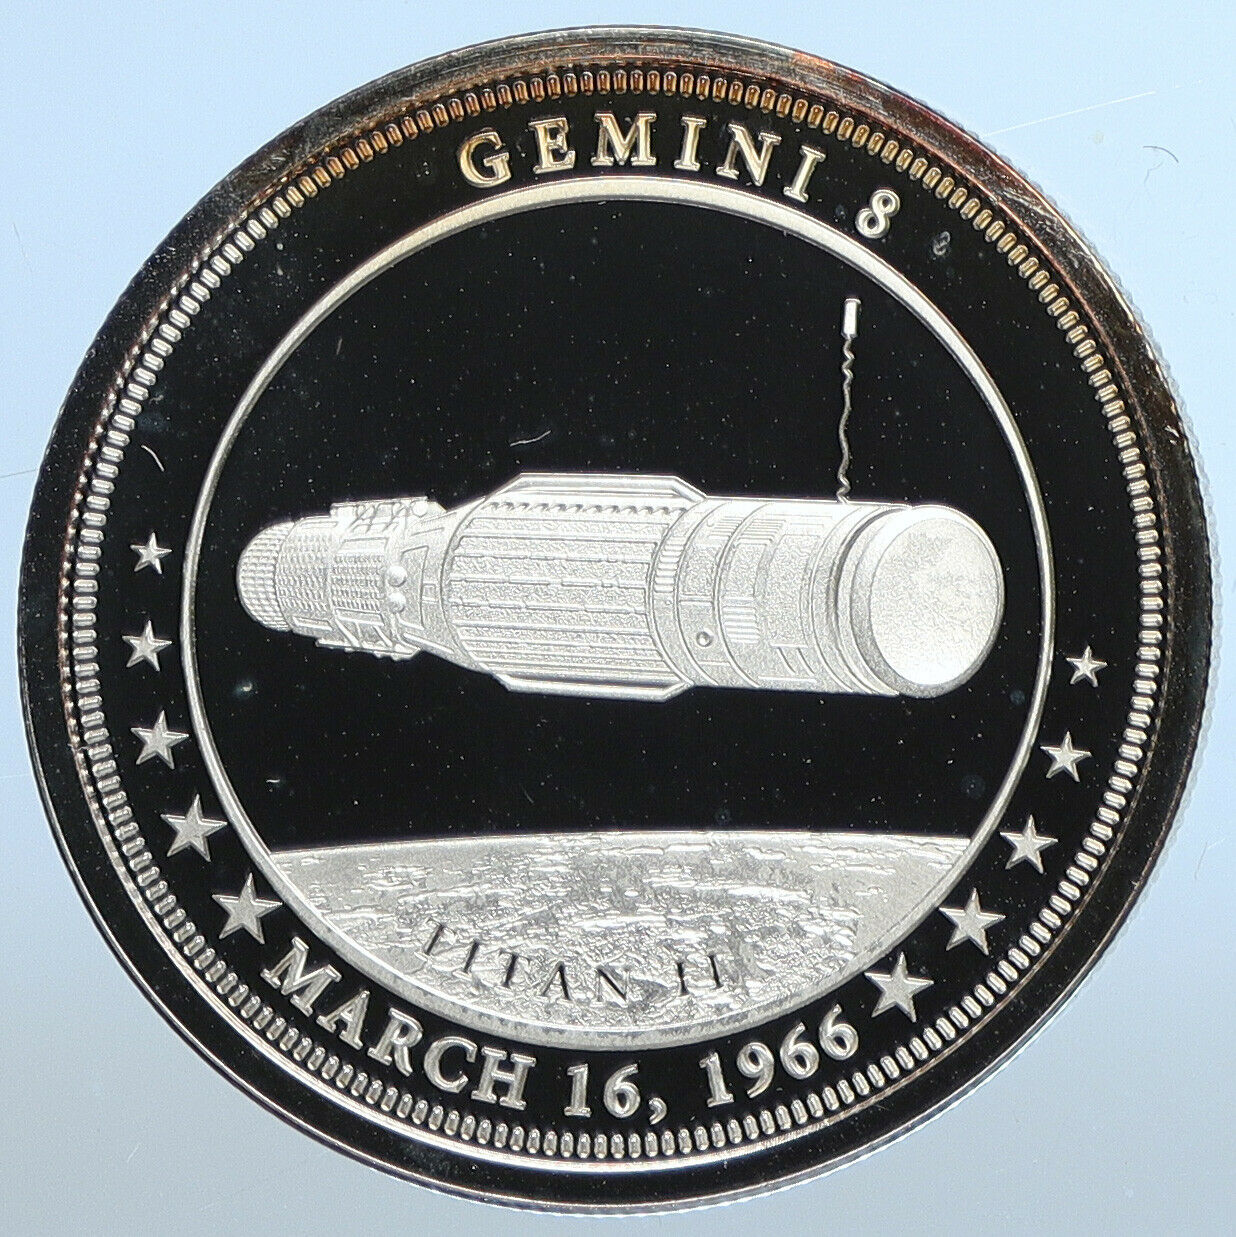 2017 FIJI UK Queen Elizabeth II GEMINI 8 NASA Space Misson Dollar Coin i111183